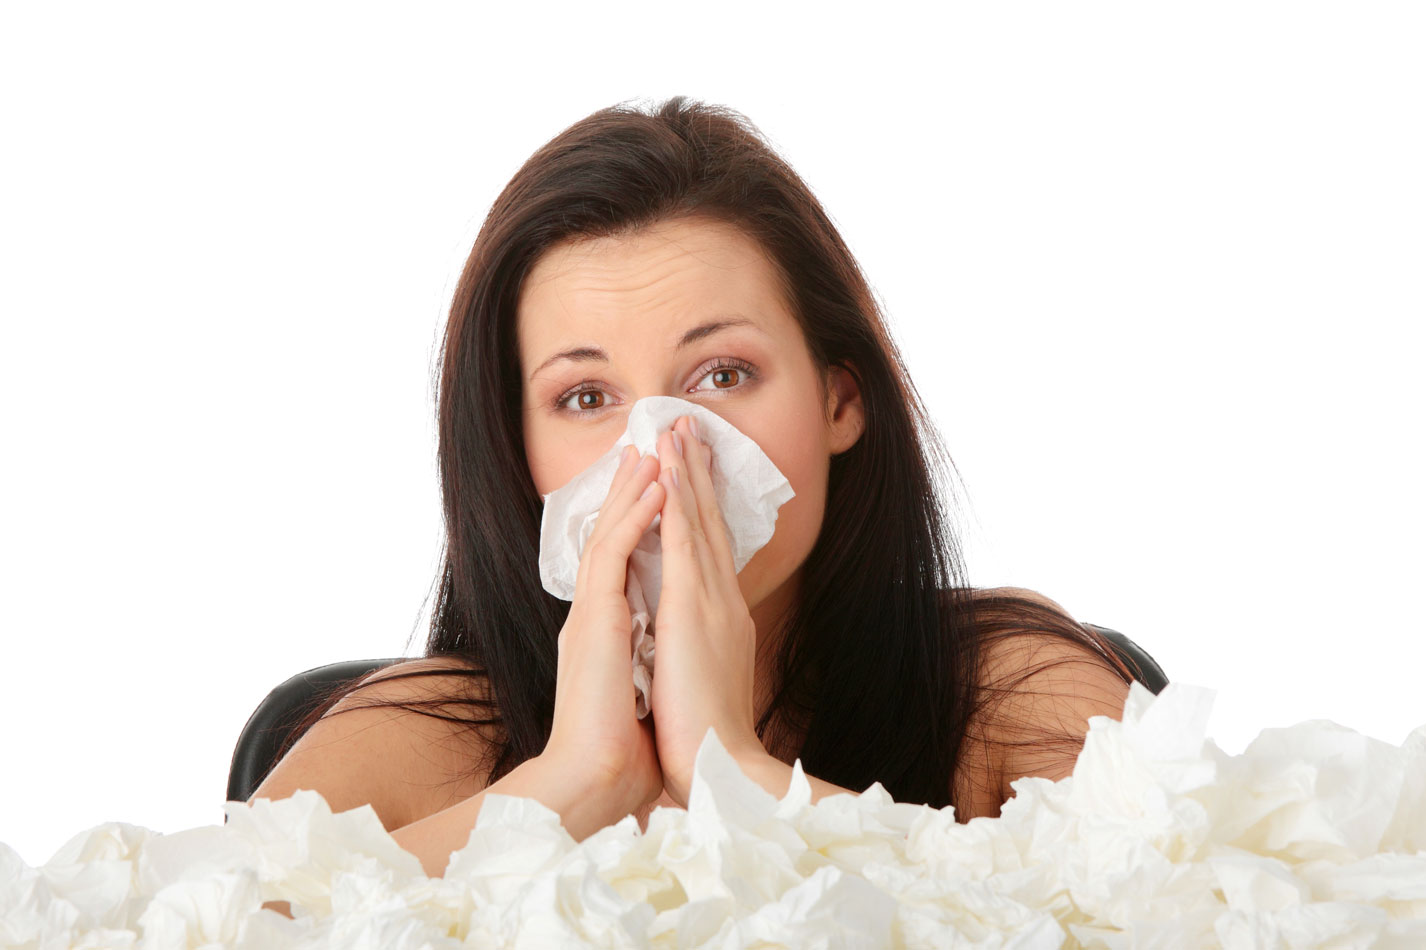 femeie care isi sufla nasul din cauza sinuzitei